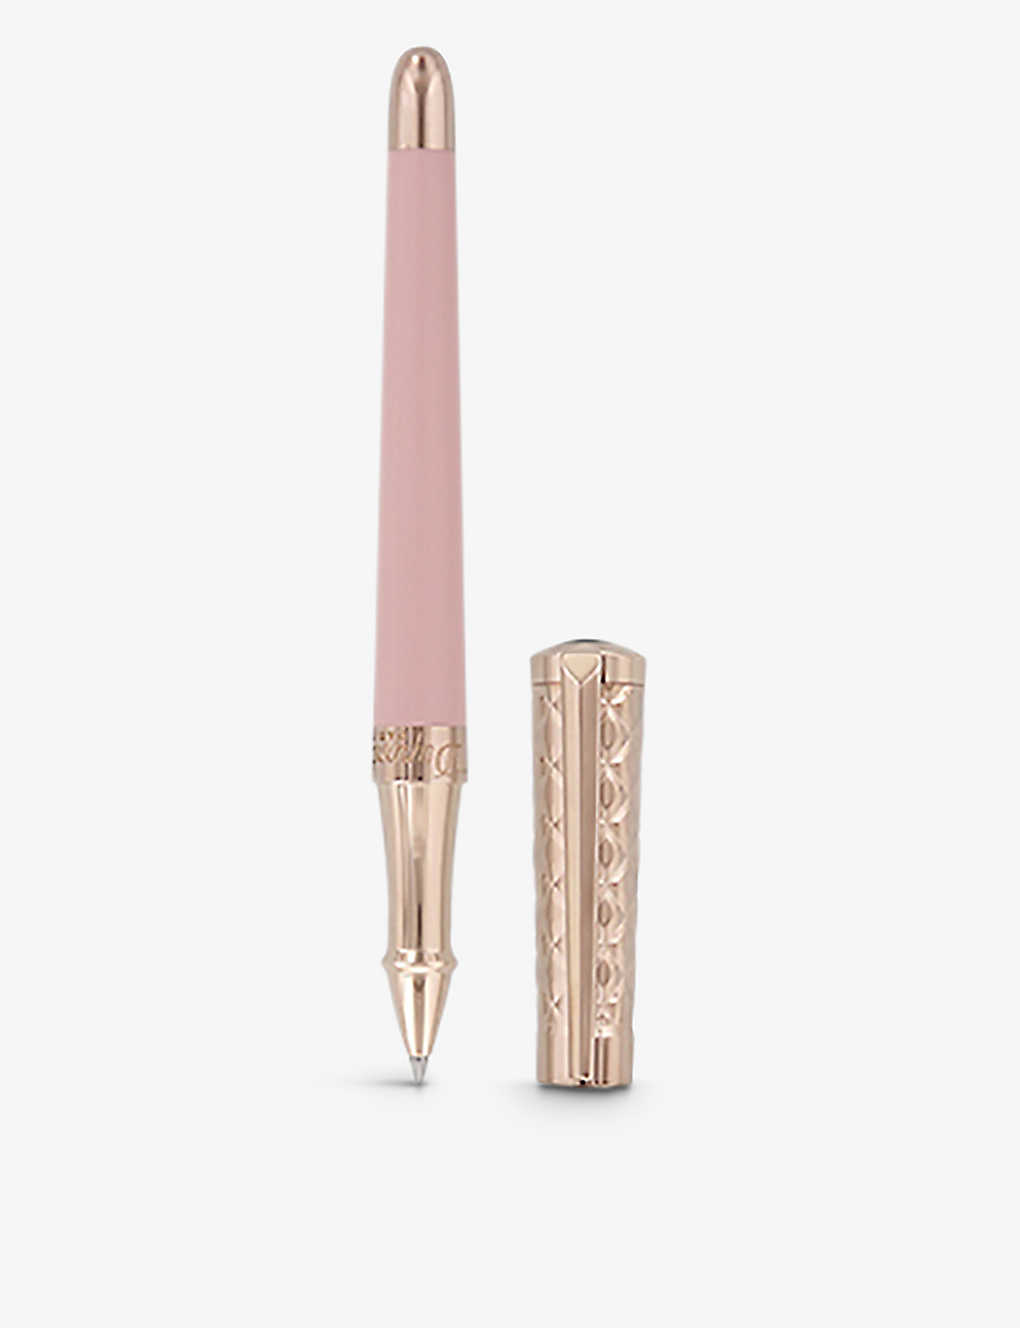 デュポン S.T.DUPONT Libert? ラッカー&ピンクゴールド ローラーペン Libert? lacquer and pink-gold rollerball pen PASTEL PINK